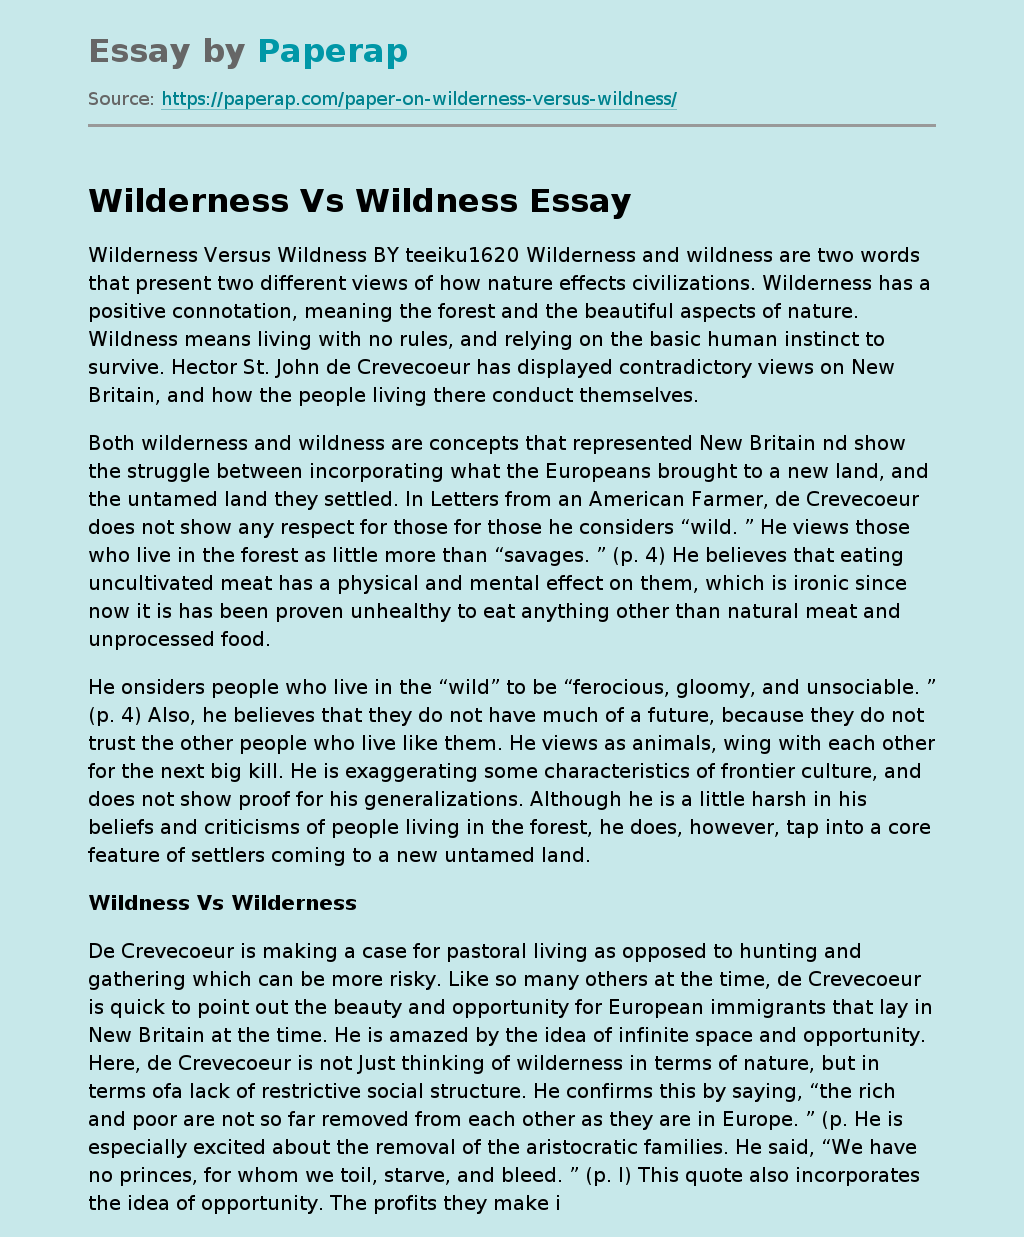 Wilderness Versus Wildness BY